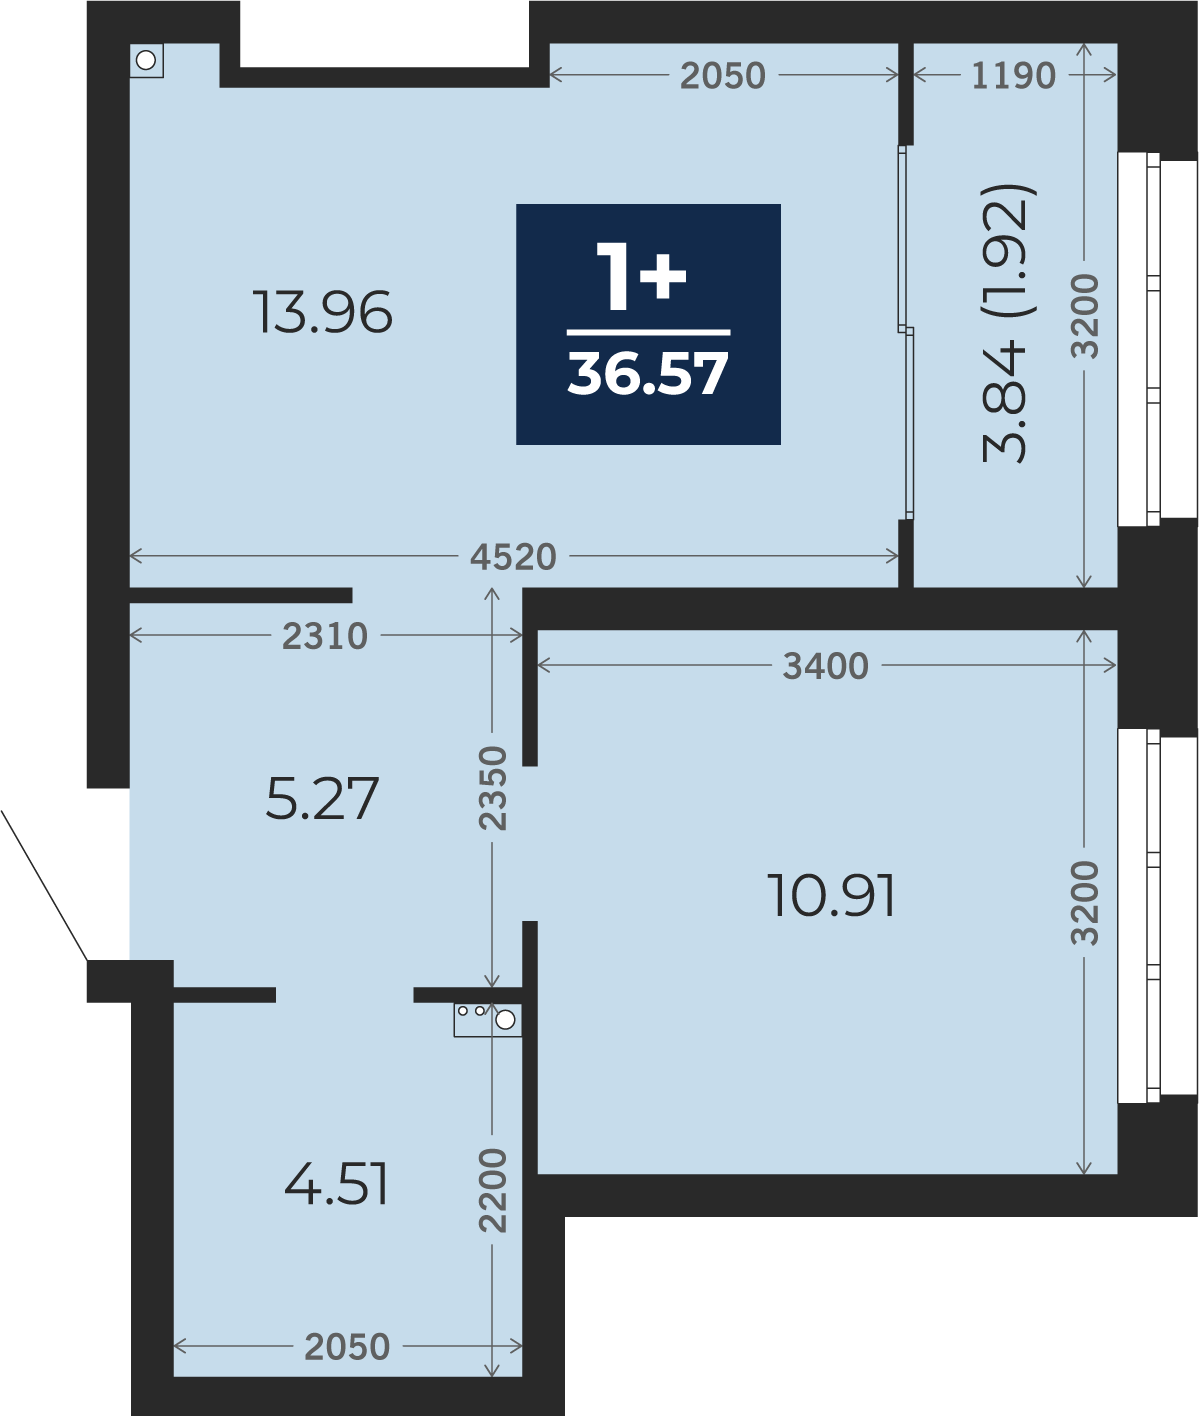 Квартира № 432, 1-комнатная, 36.57 кв. м, 2 этаж